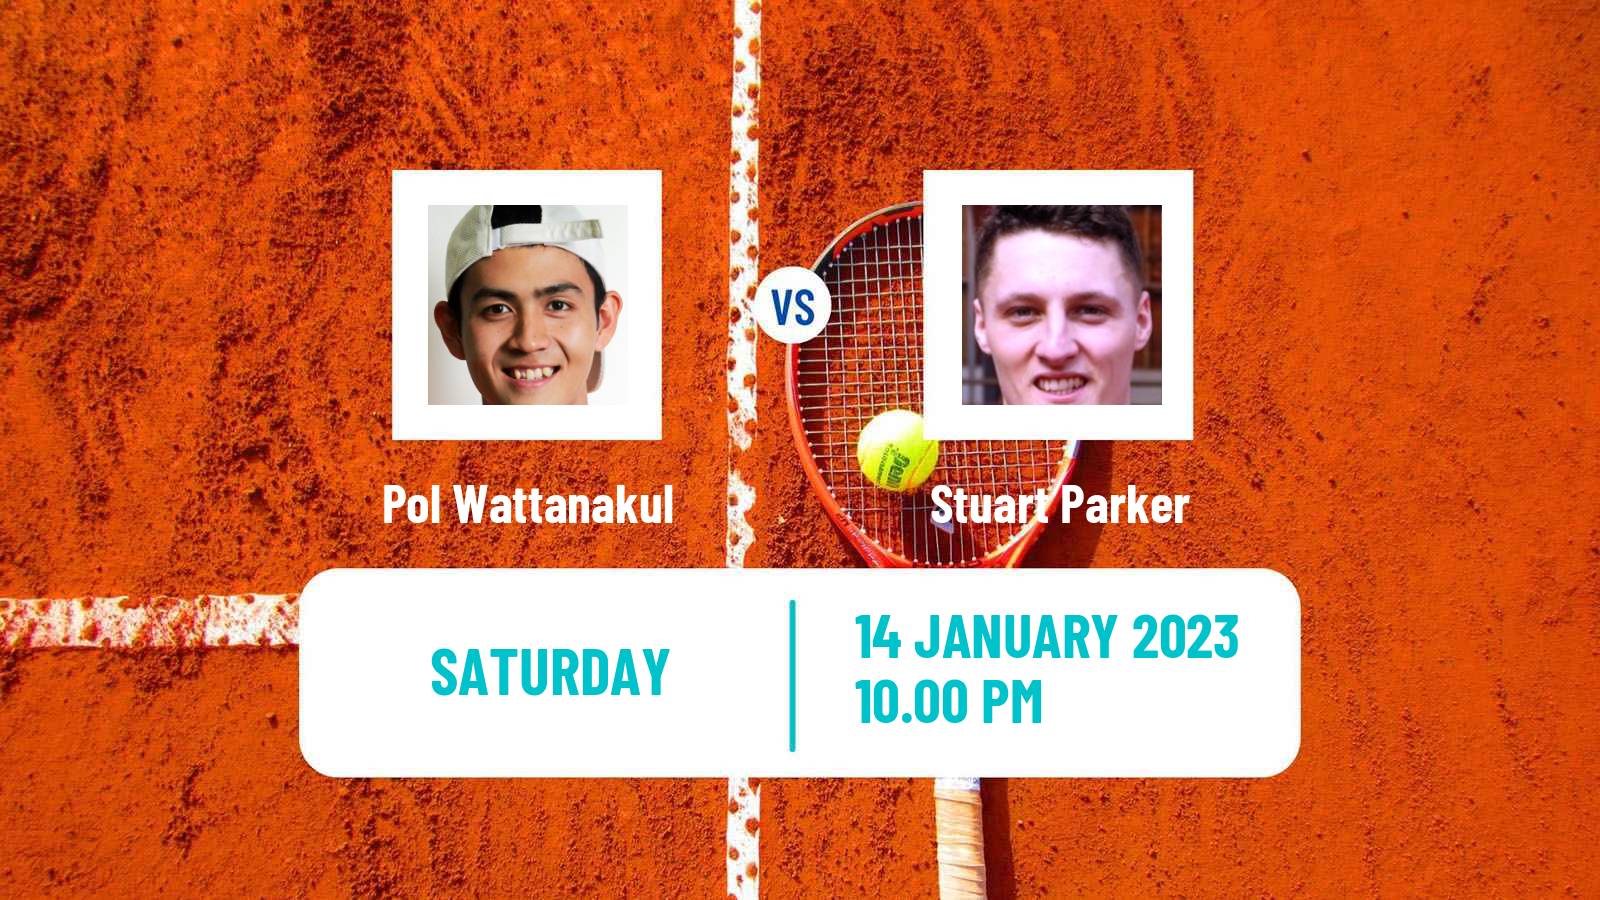 Tennis ATP Challenger Pol Wattanakul - Stuart Parker